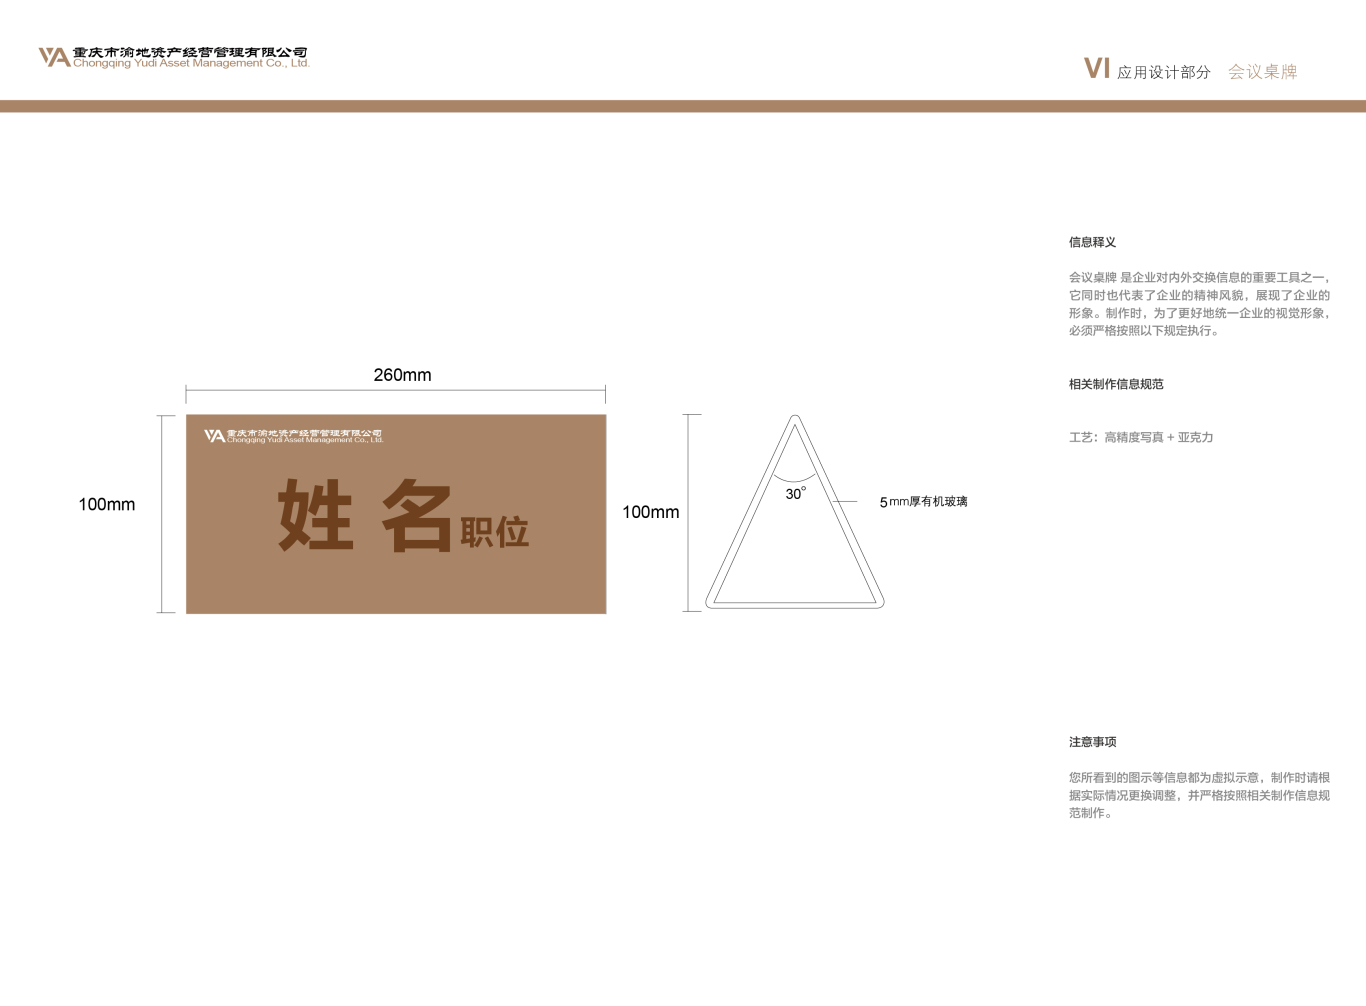 重庆市渝地资产经营管理有限公司vi设计图39